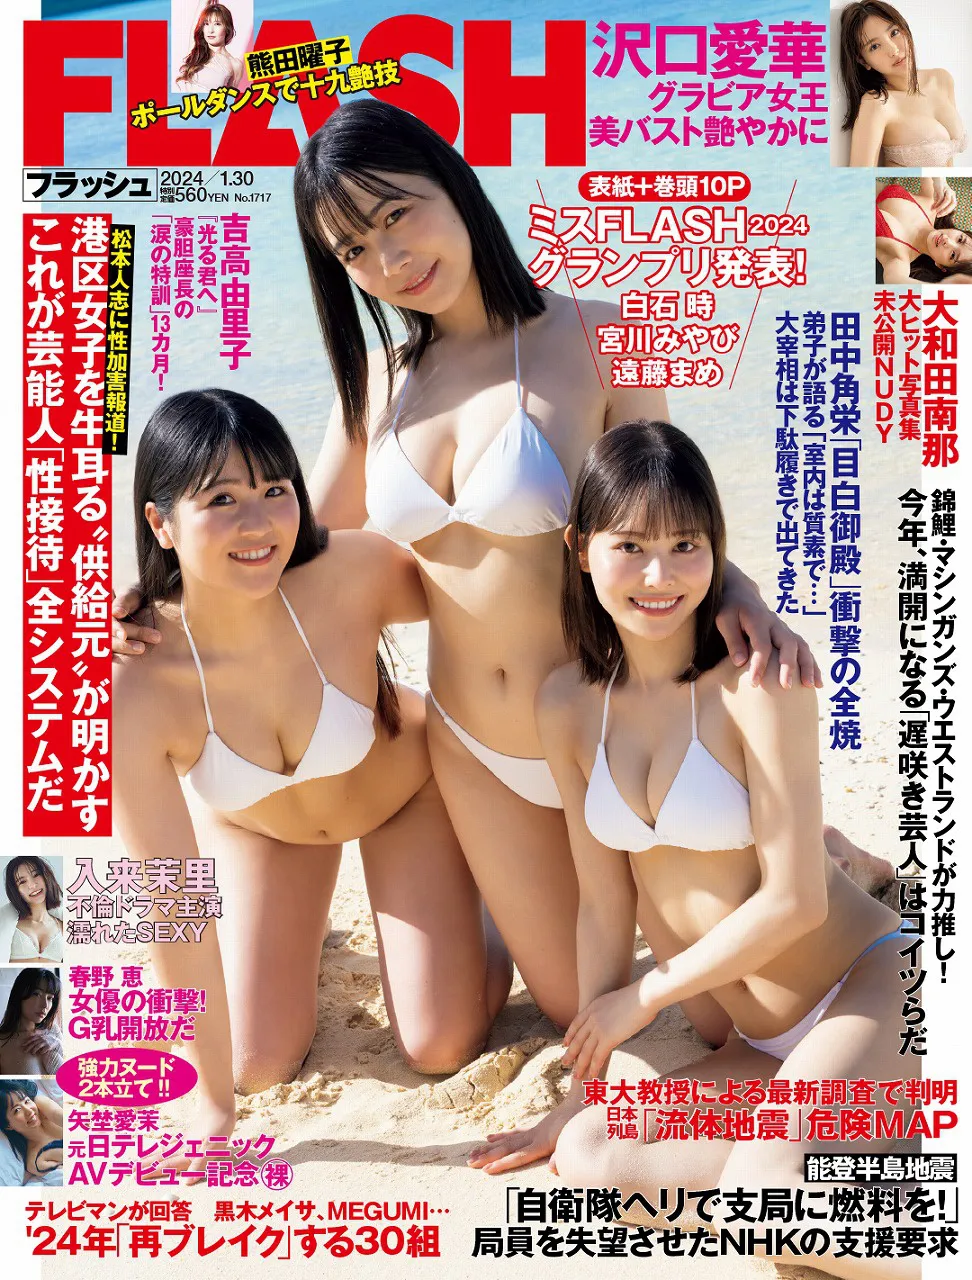 「週刊FLASH」1月16日発売号表紙